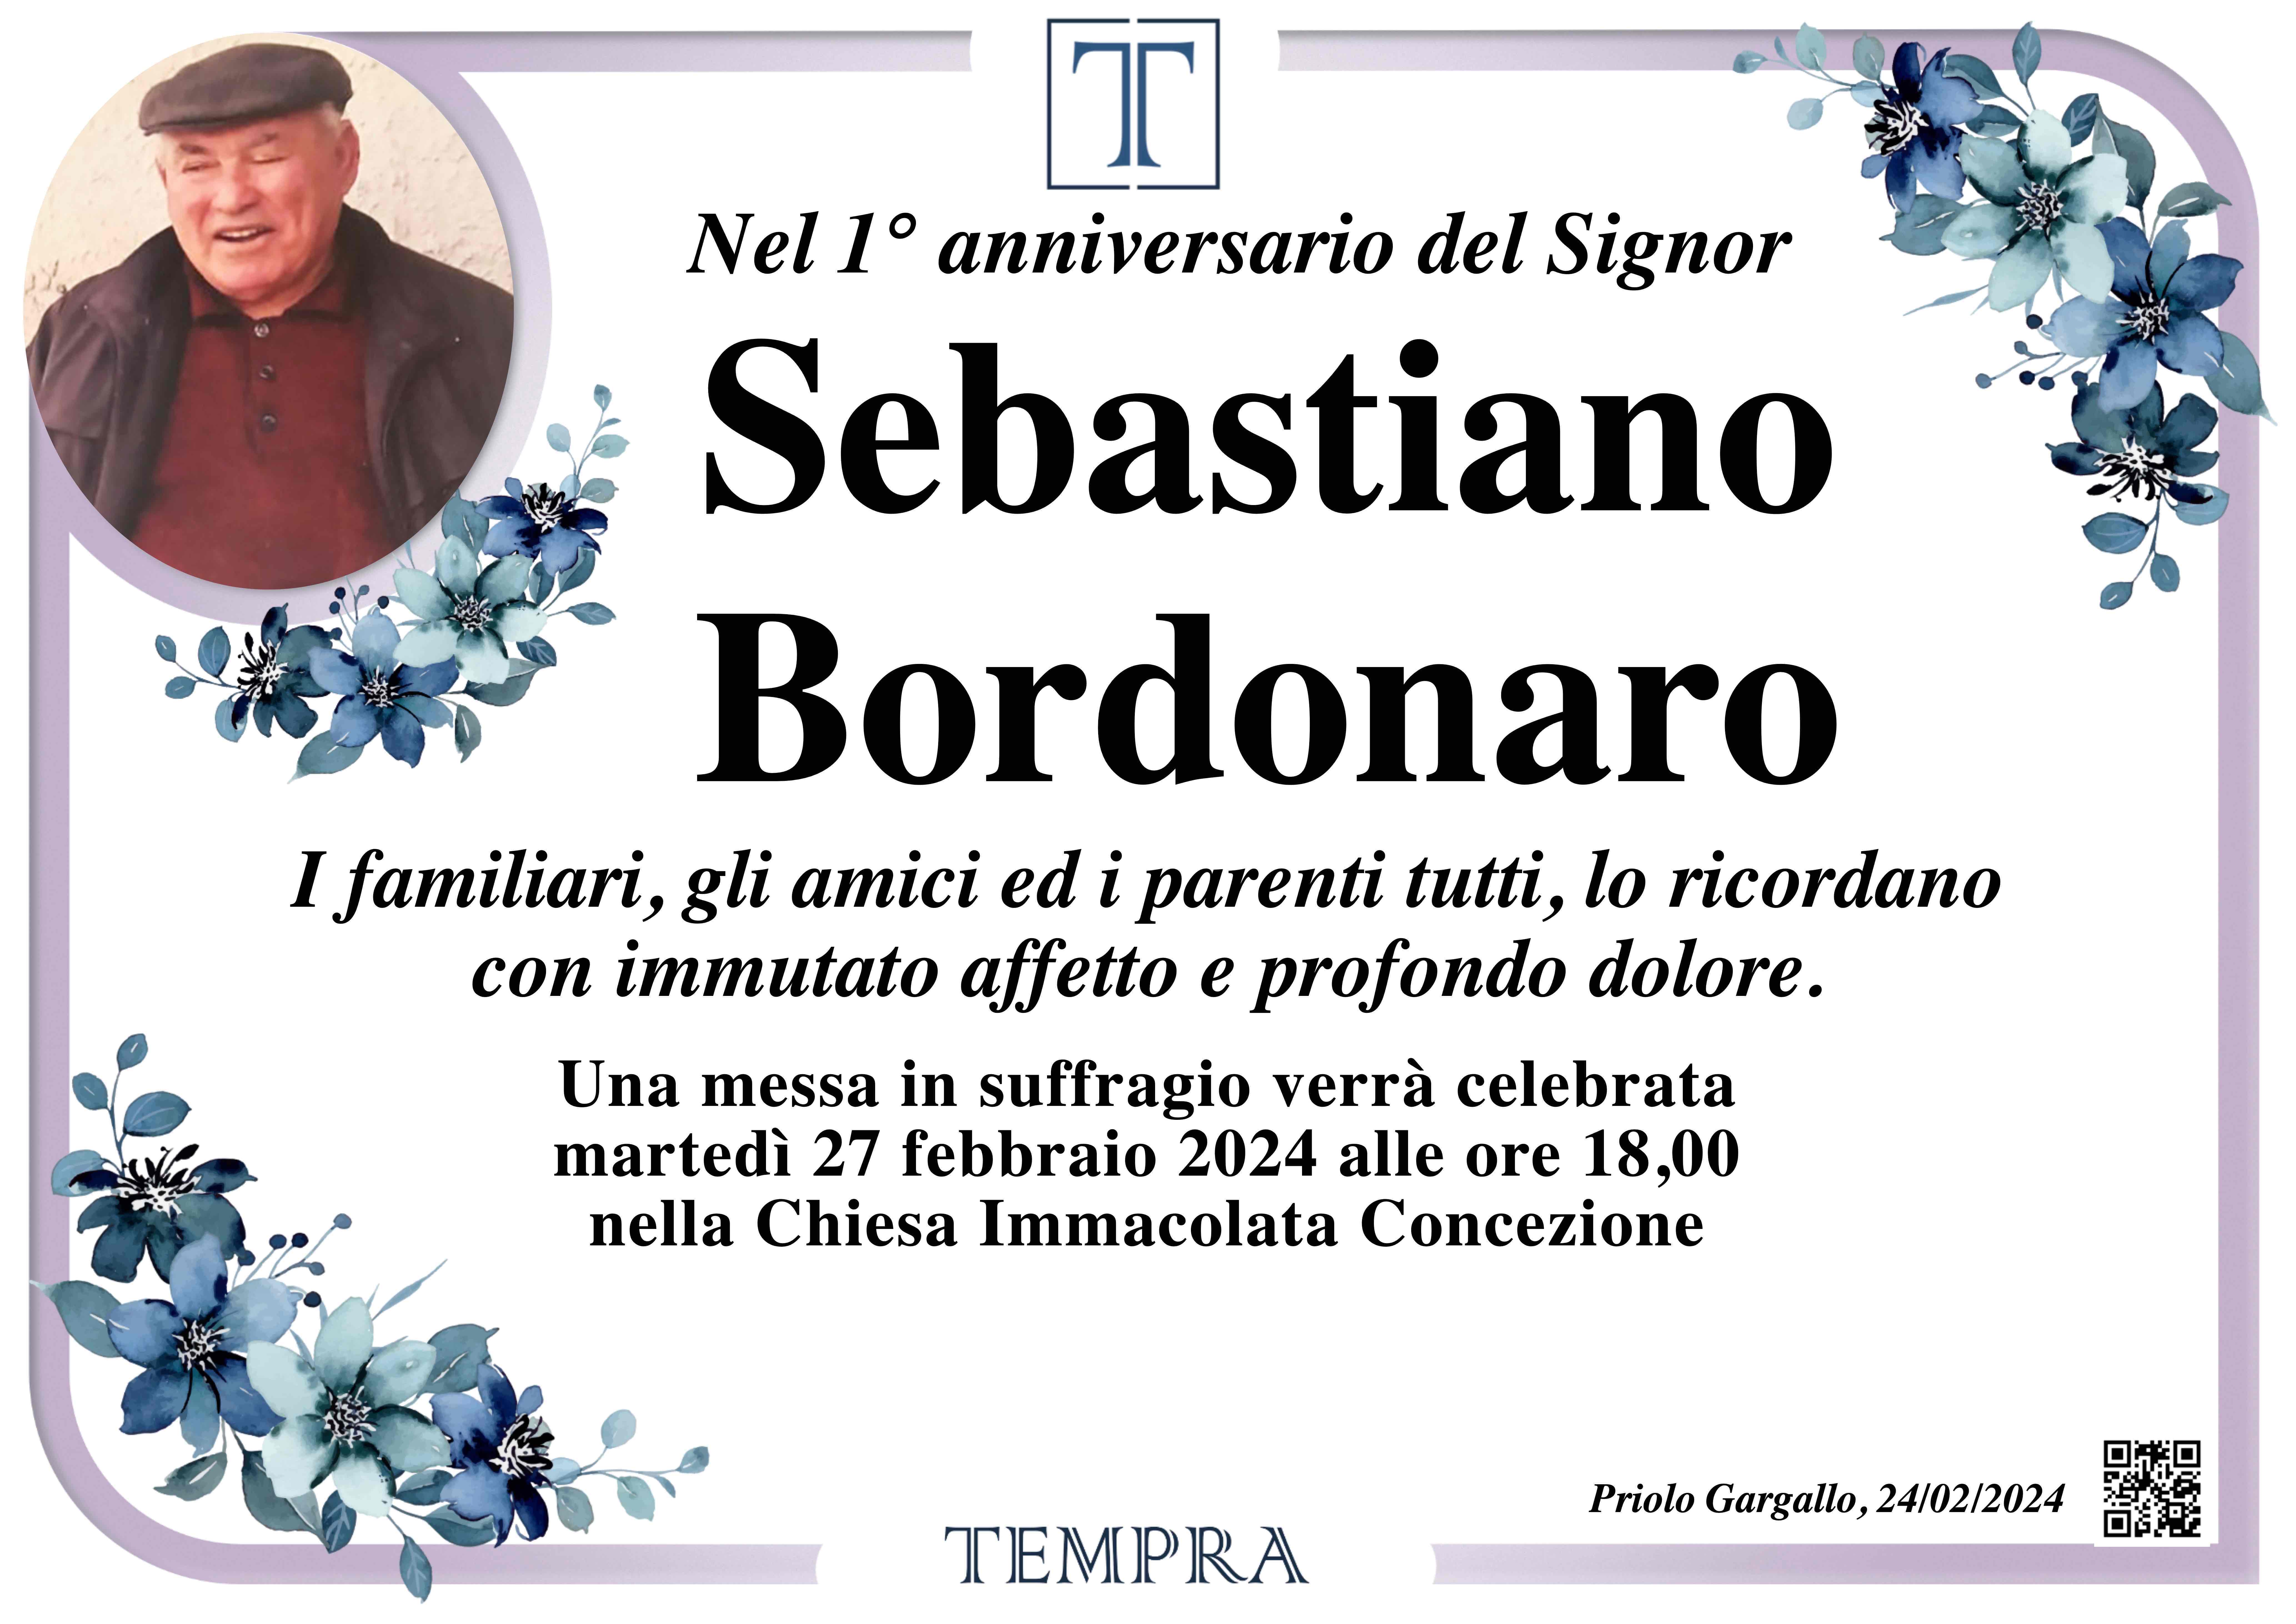 Sebastiano Bordonaro